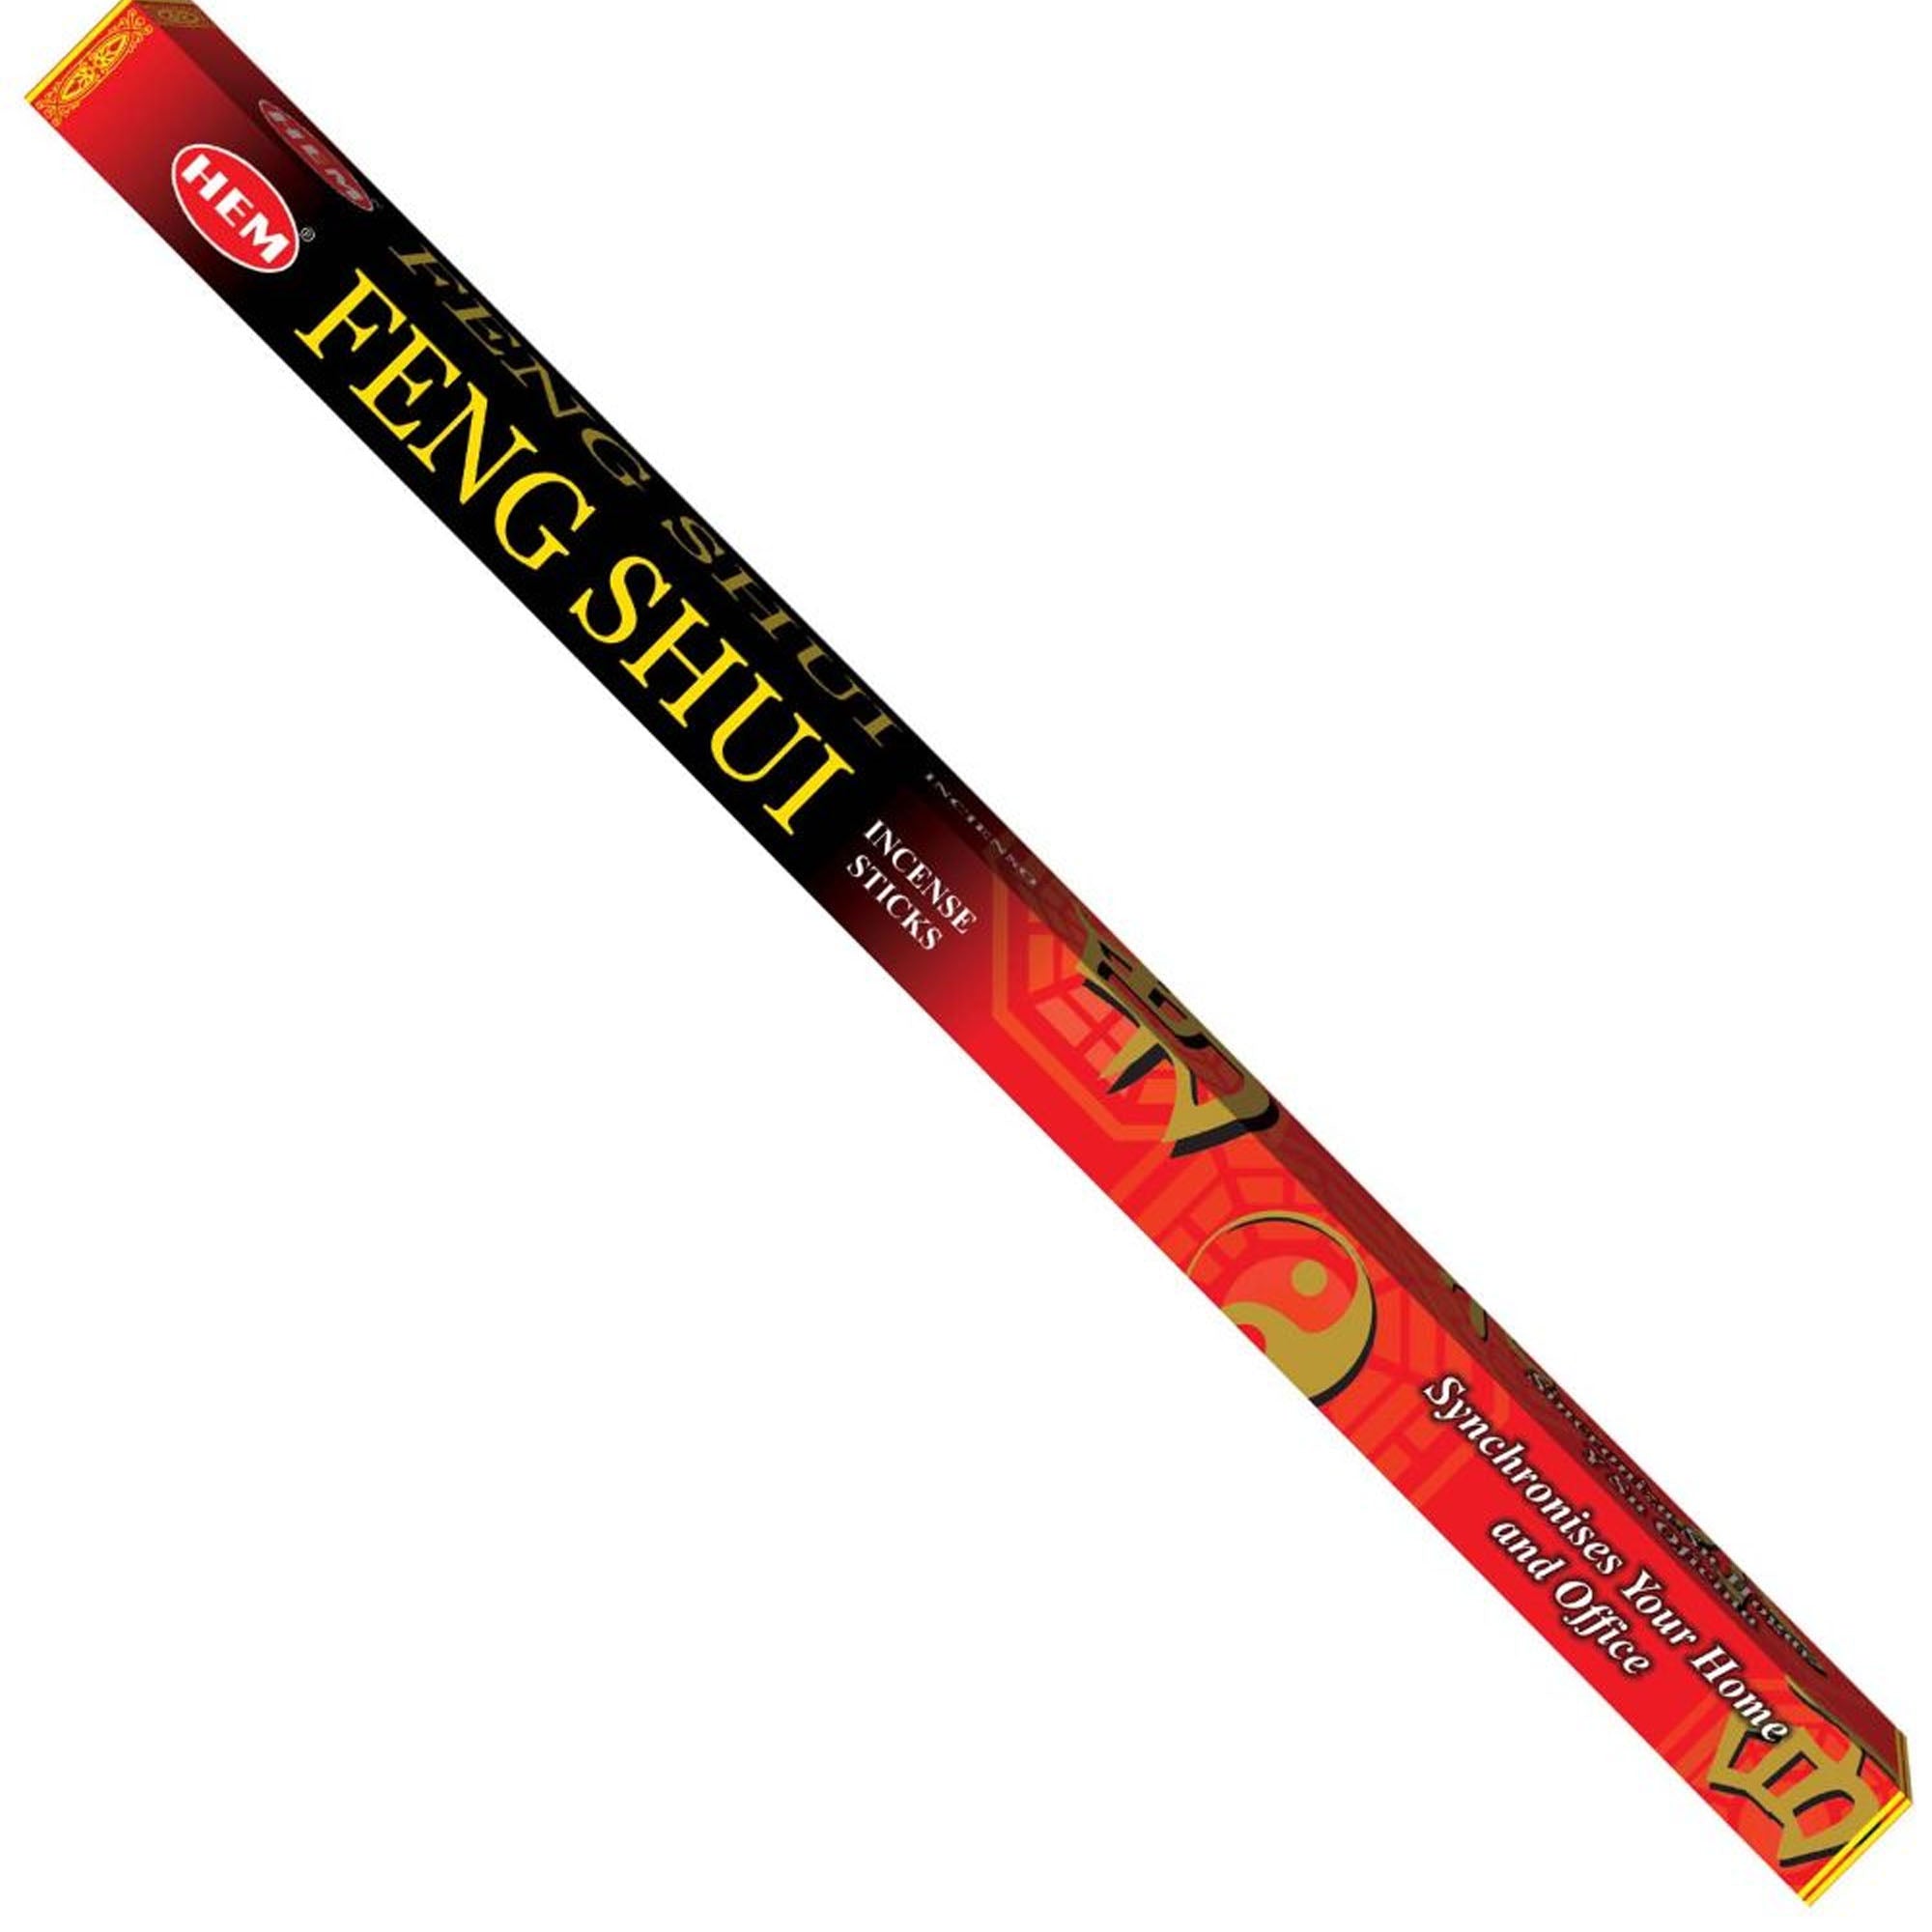 Hem - Square - Feng Shui Incense Sticks